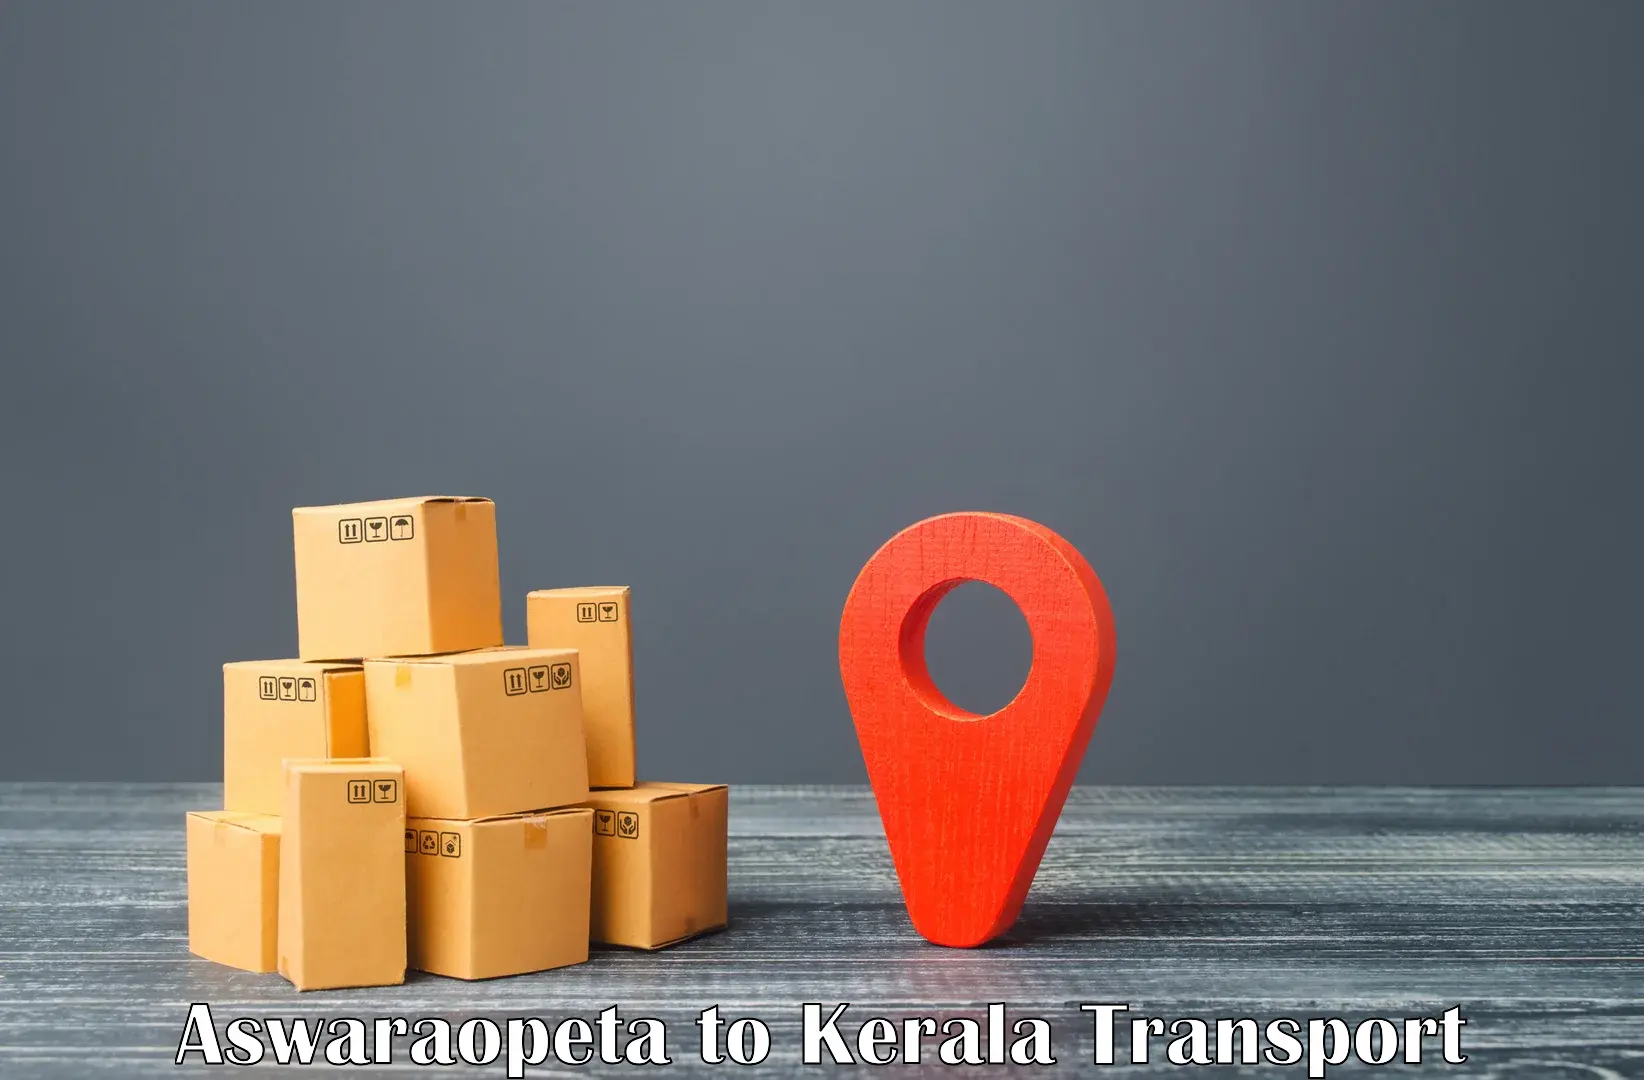 Express transport services Aswaraopeta to Koothattukulam